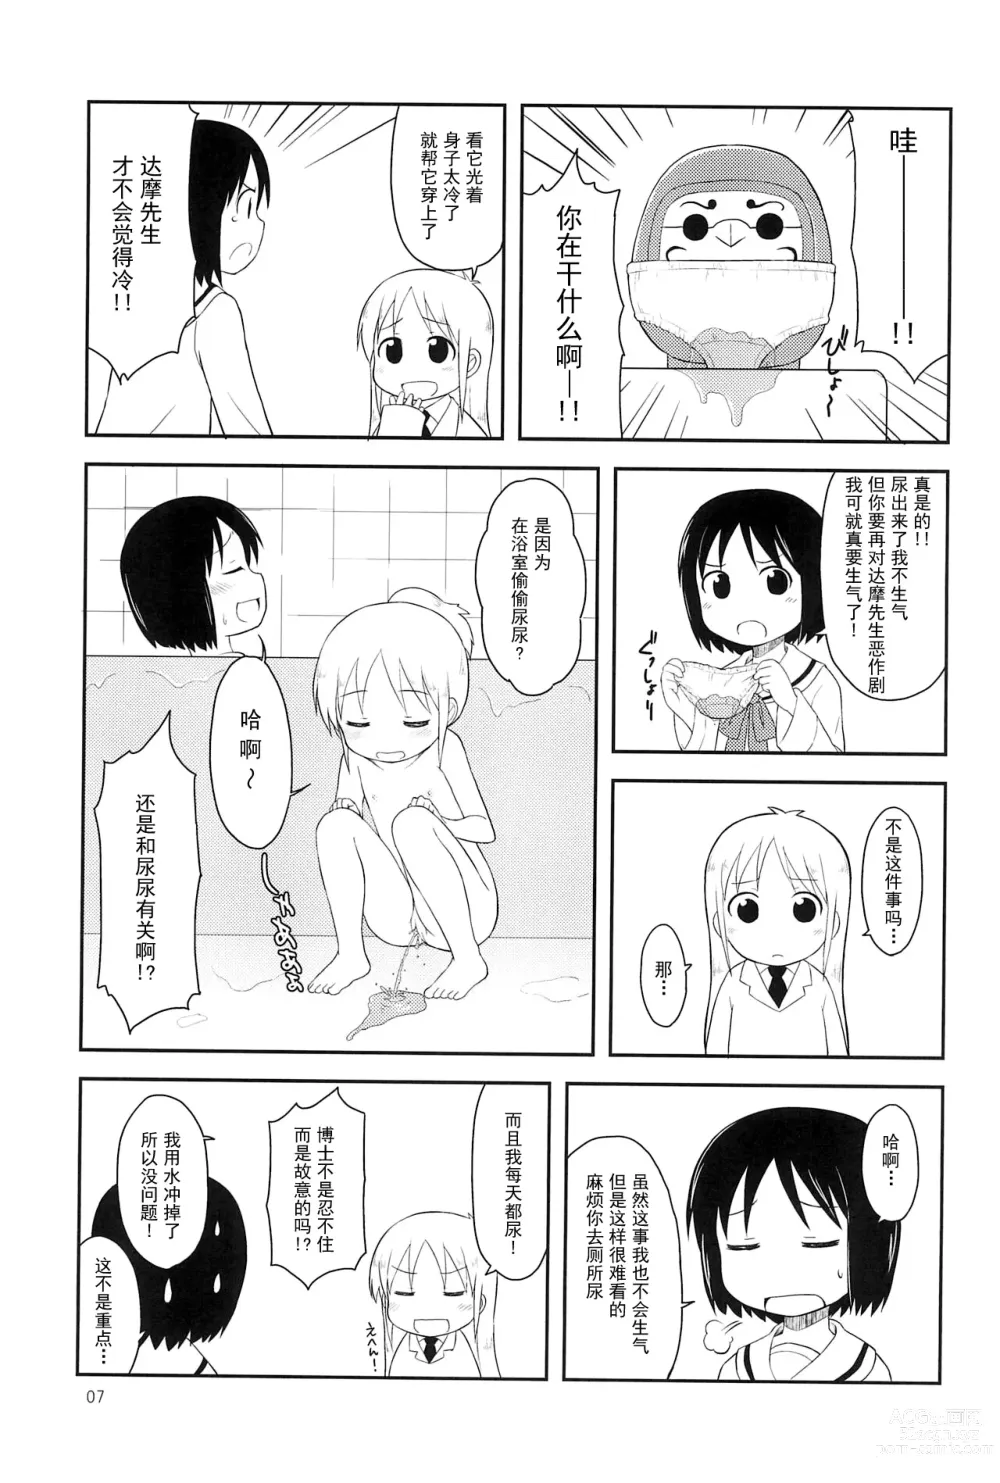 Page 7 of doujinshi Youta Tanpenshuu Yoru no Uta